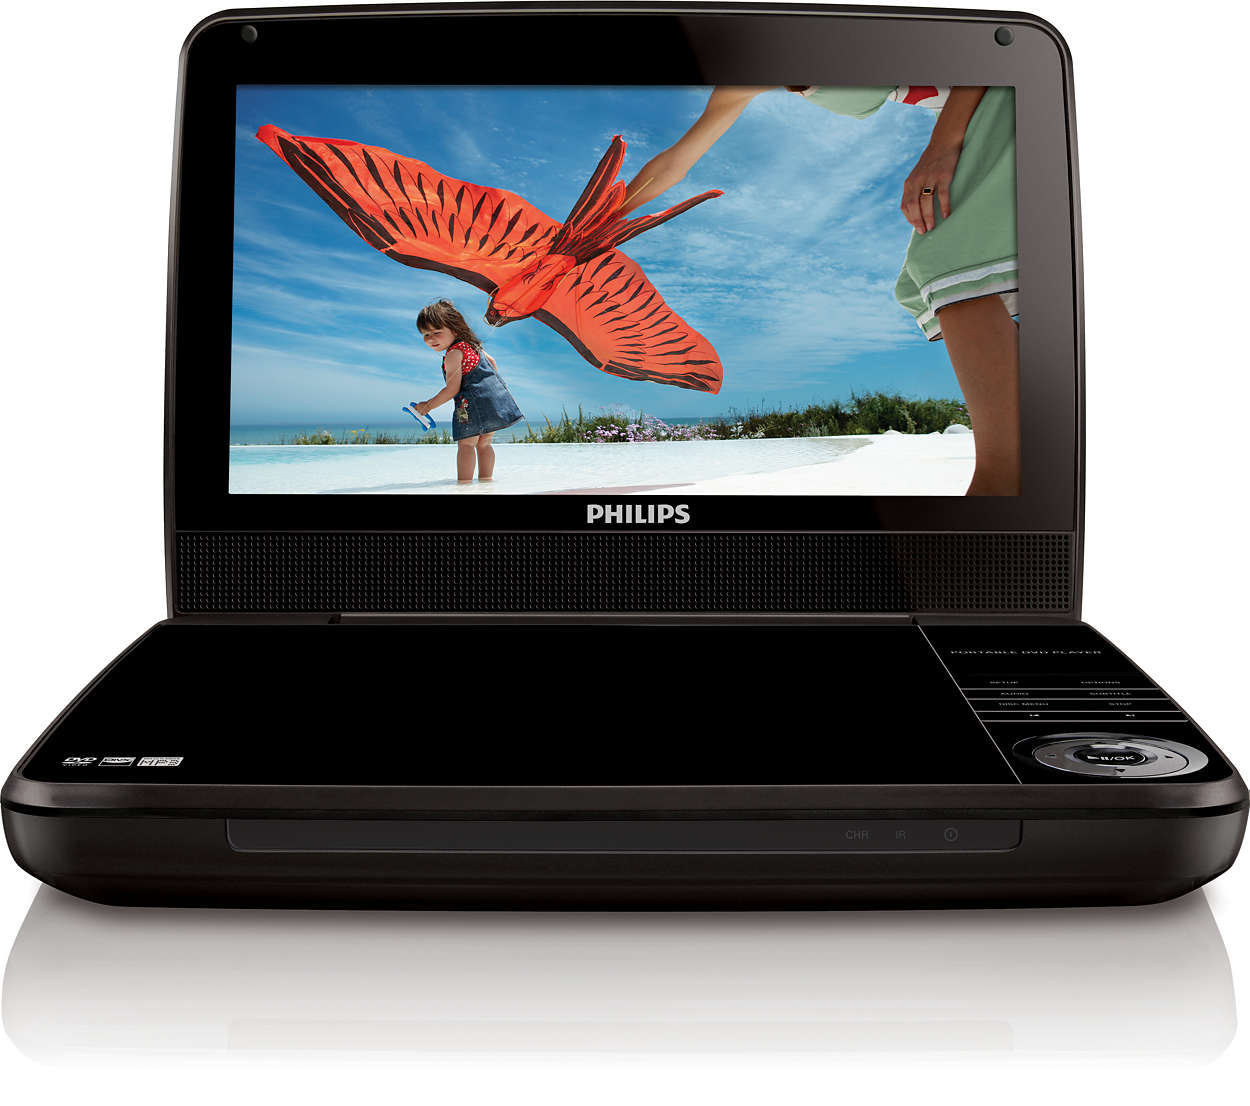 Aguanieve Derivación Decorar Reproductor de DVD portátil PD9010/12 | Philips